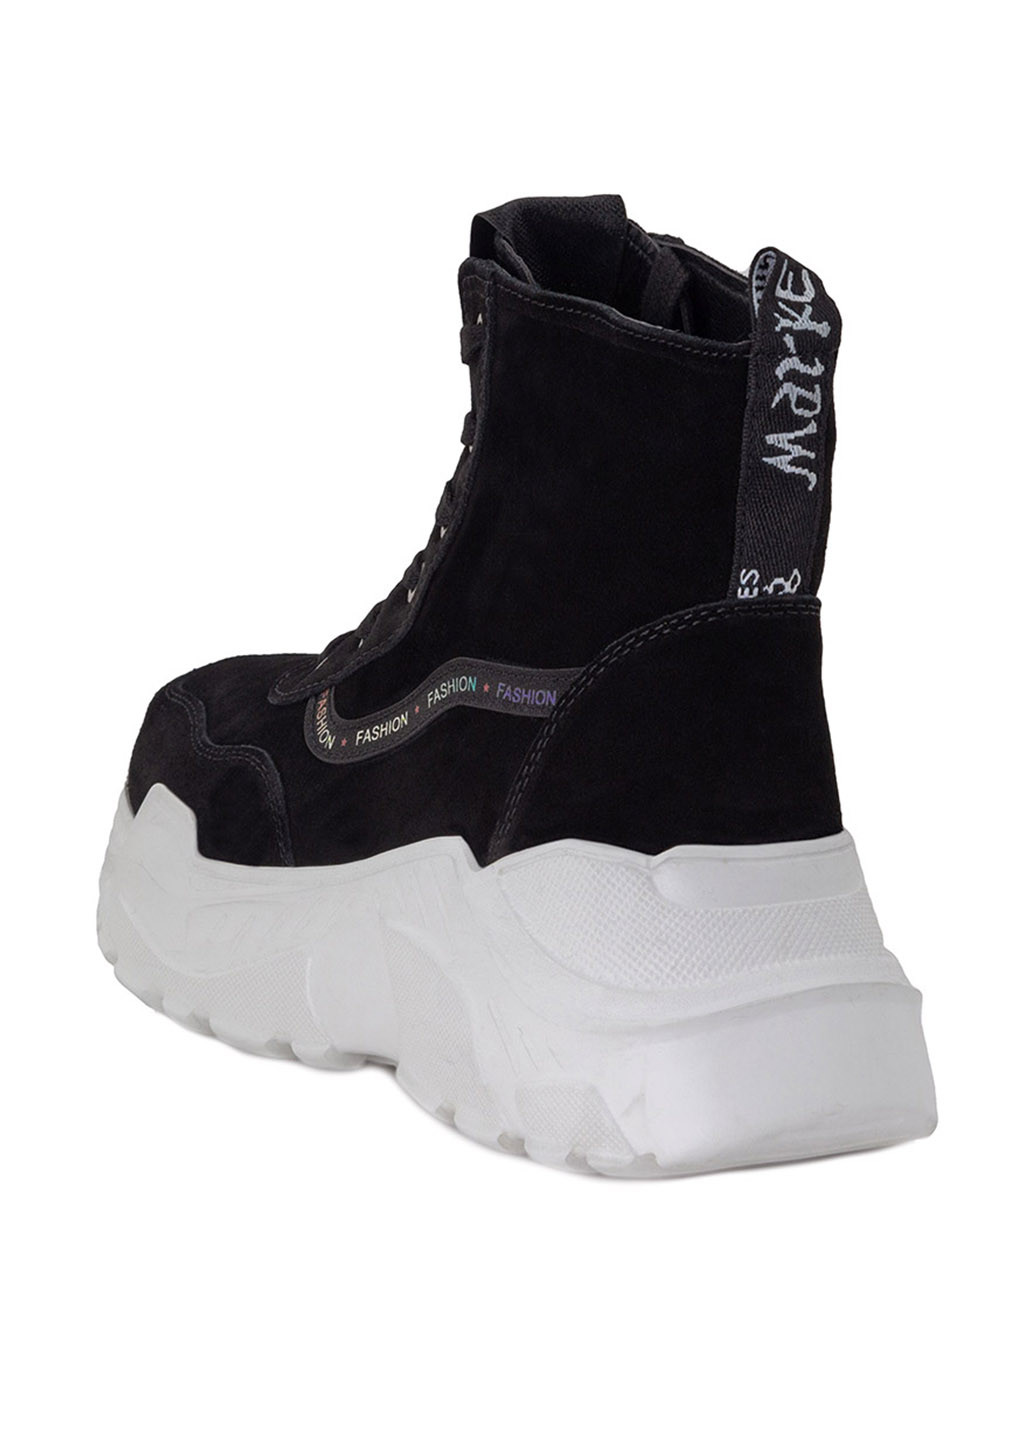 Зимние ботинки Optima с белой подошвой из натуральной замши